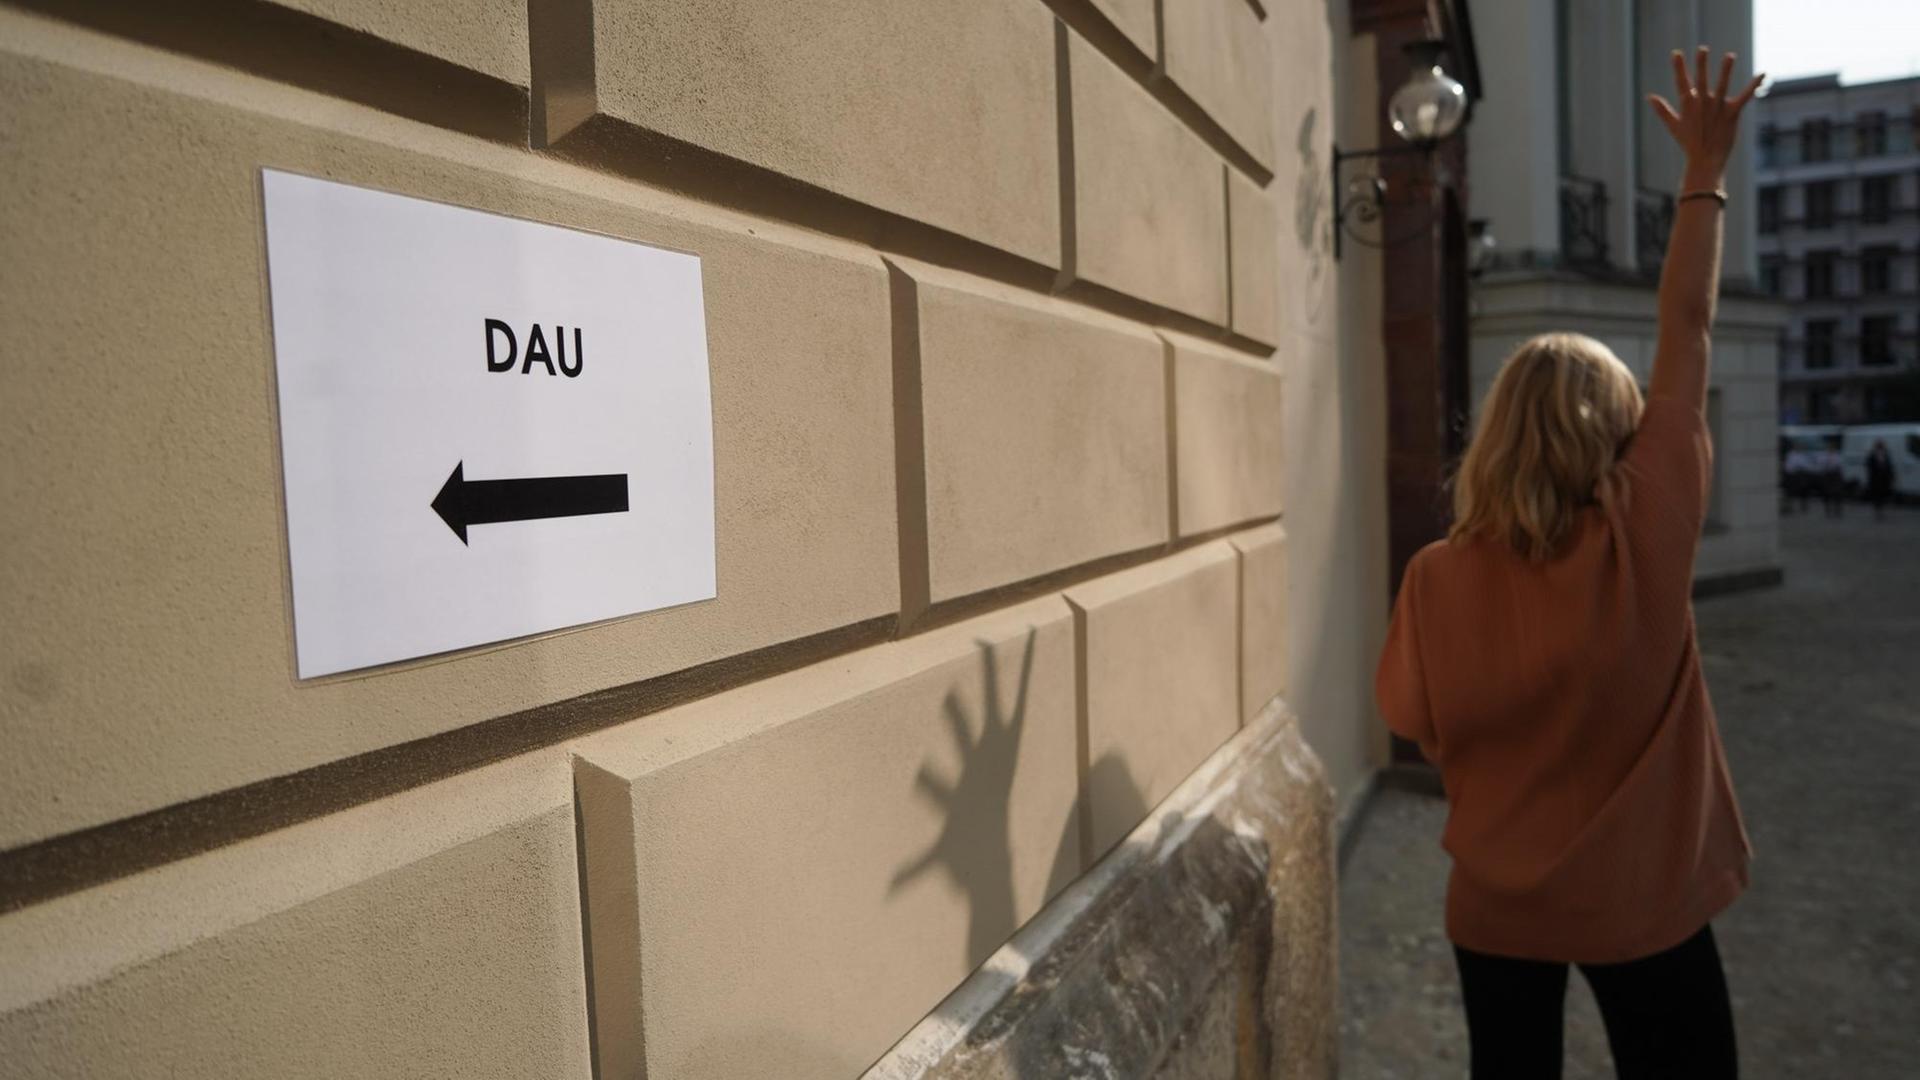 Ein Wegweiser mit der Aufschrift "Dau" führt in den Schinkel Pavillon, wo im Rahmen einer Pressekonferenz das Mauer- und Kunstprojekts "DAU Freiheit" vorgestellt wird.